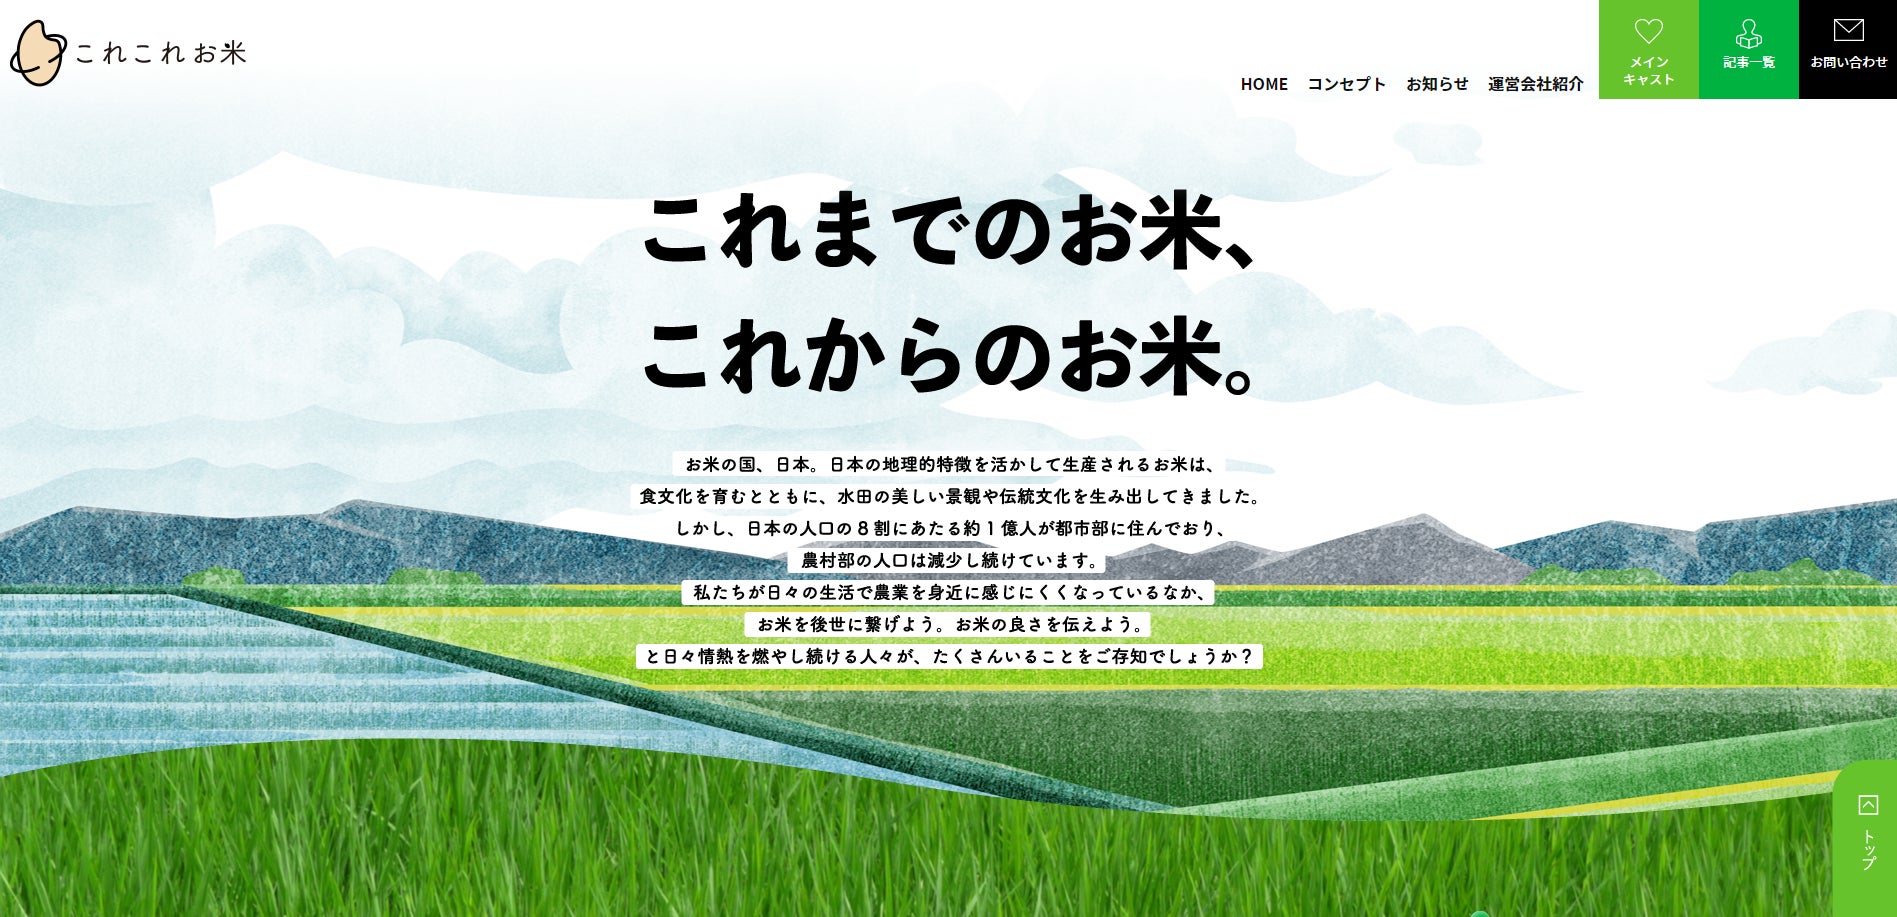 「米・人・水」オール兵庫でスクラムを組んだ兵庫県に関わるみんなの日本酒『Ｎｕｍｂｅｒ』を限定発売